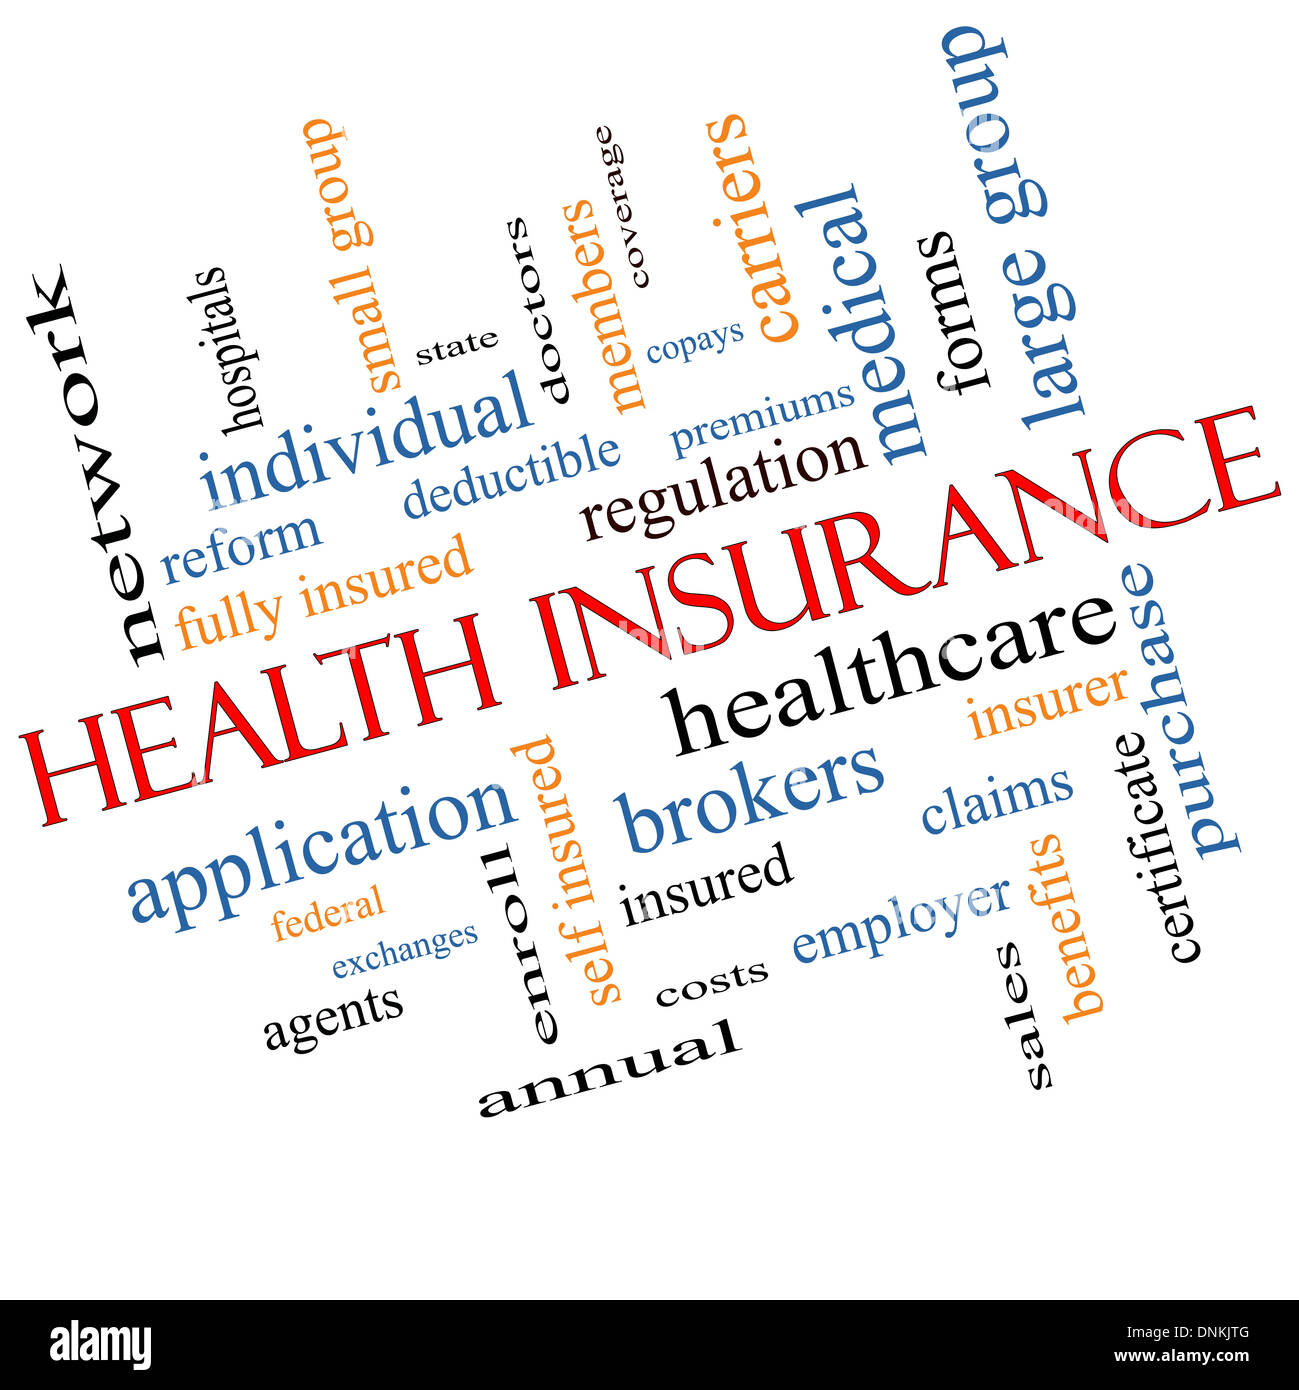 Krankenversicherung-Wort-Cloud-Konzept abgewinkelt mit großen Begriffe wie Gesundheitswesen, Reform, einschreiben, Ansprüche und vieles mehr. Stockfoto